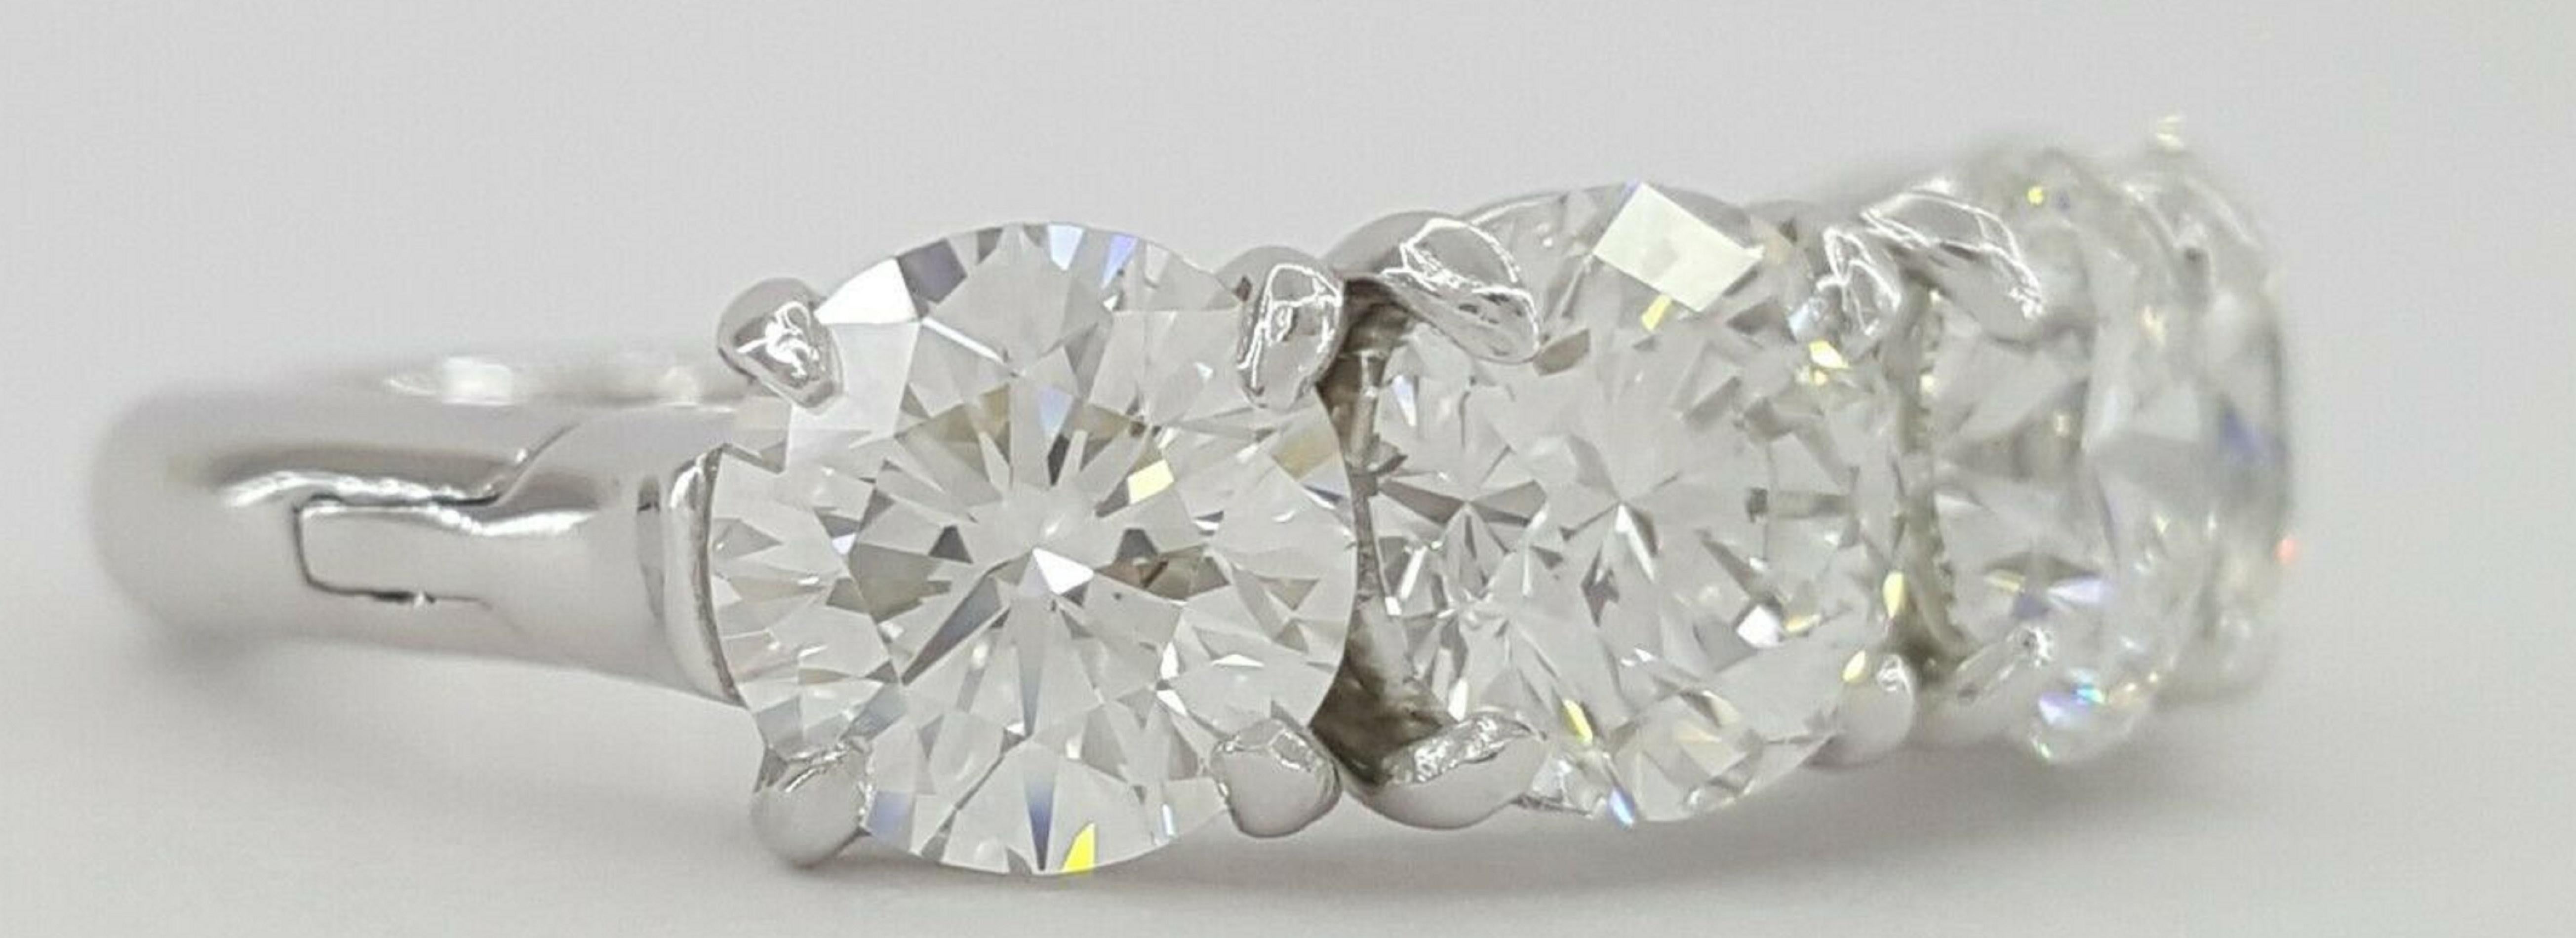 GIA-zertifiziert 3,50 Karat runder Brillantschliff Diamant Ehering
jeder Diamant wiegt 0,72-0,73 Karat und wurde von GIA zertifiziert